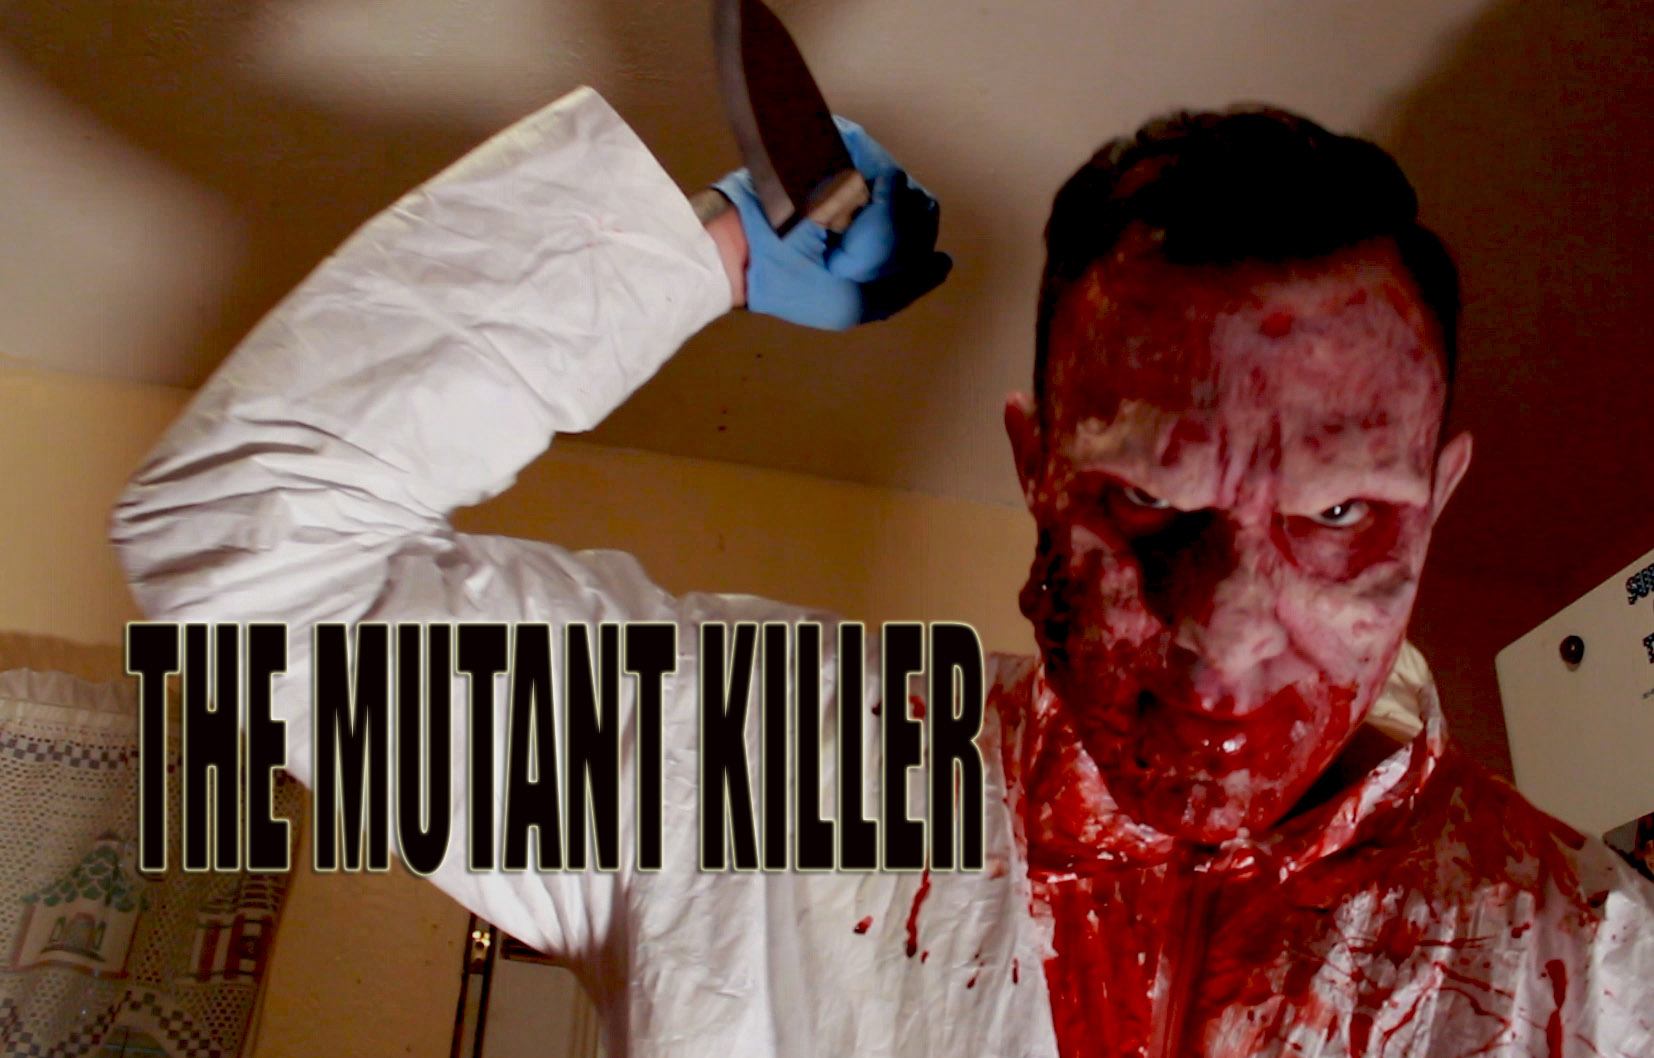 Promotional Flyer for The Mutant Killer.